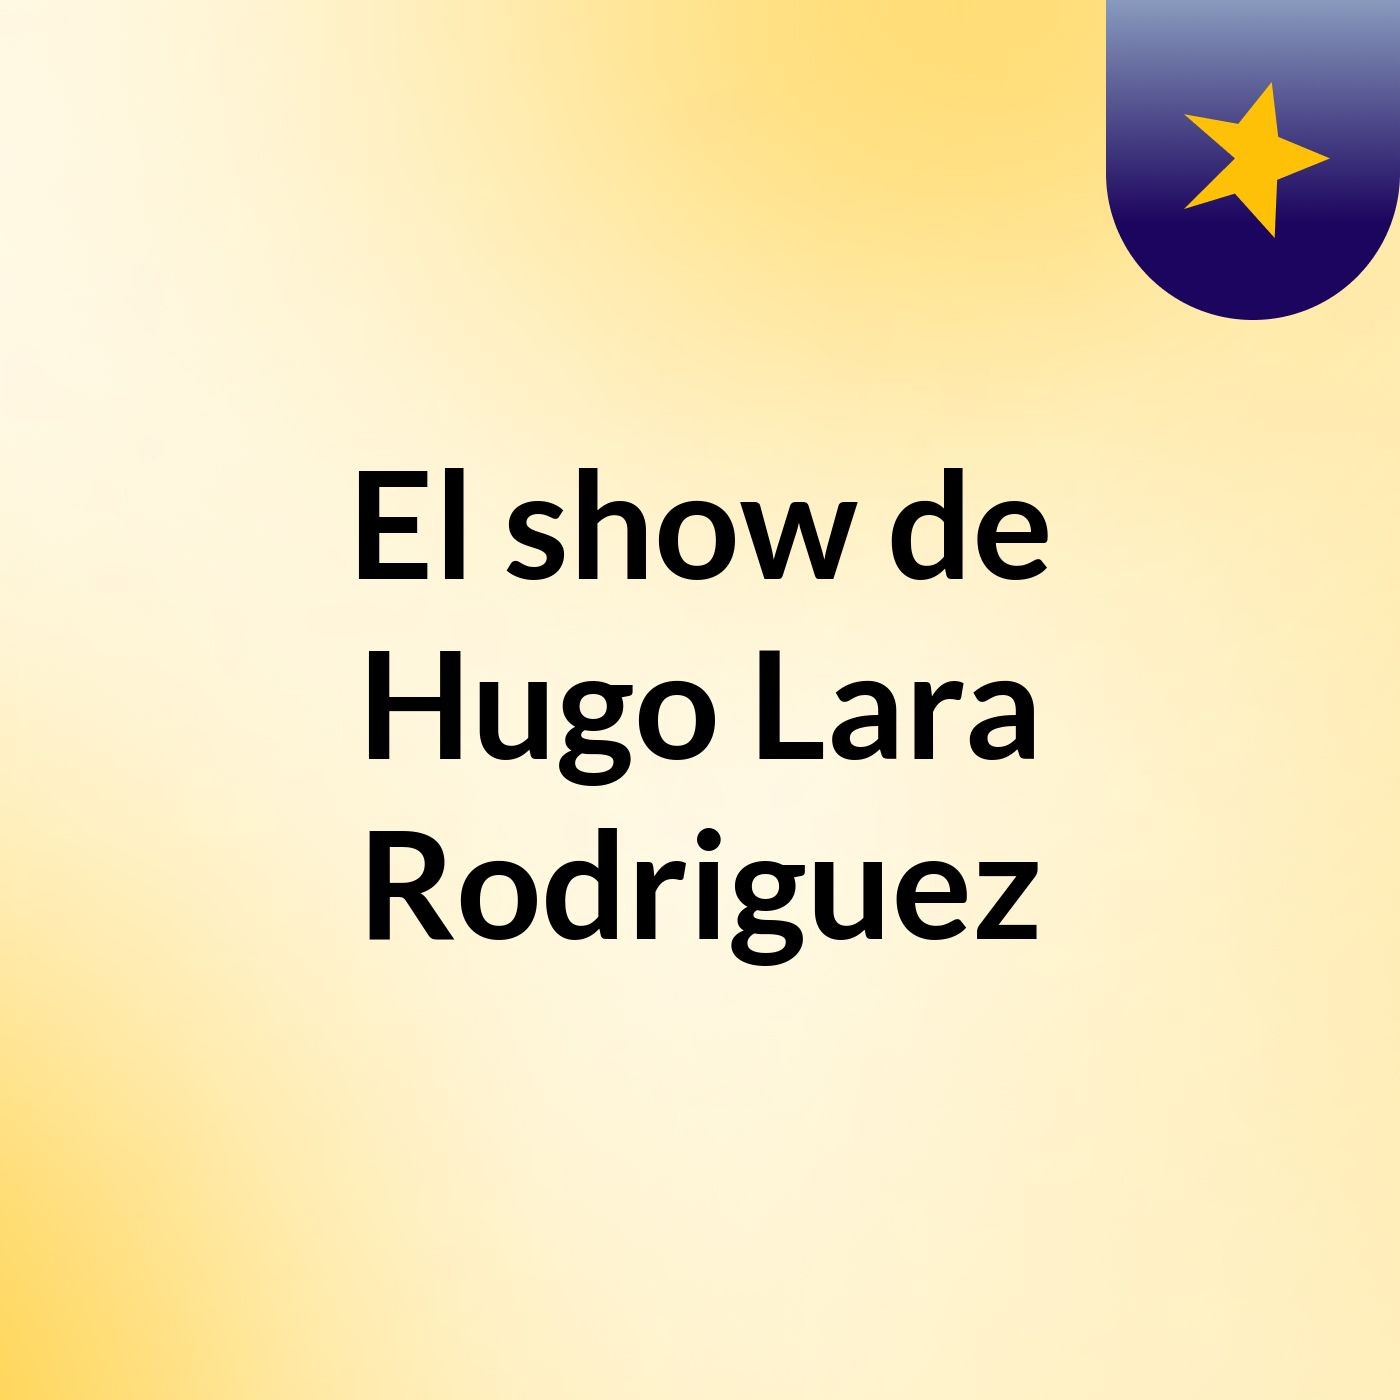 El show de Hugo Lara Rodriguez